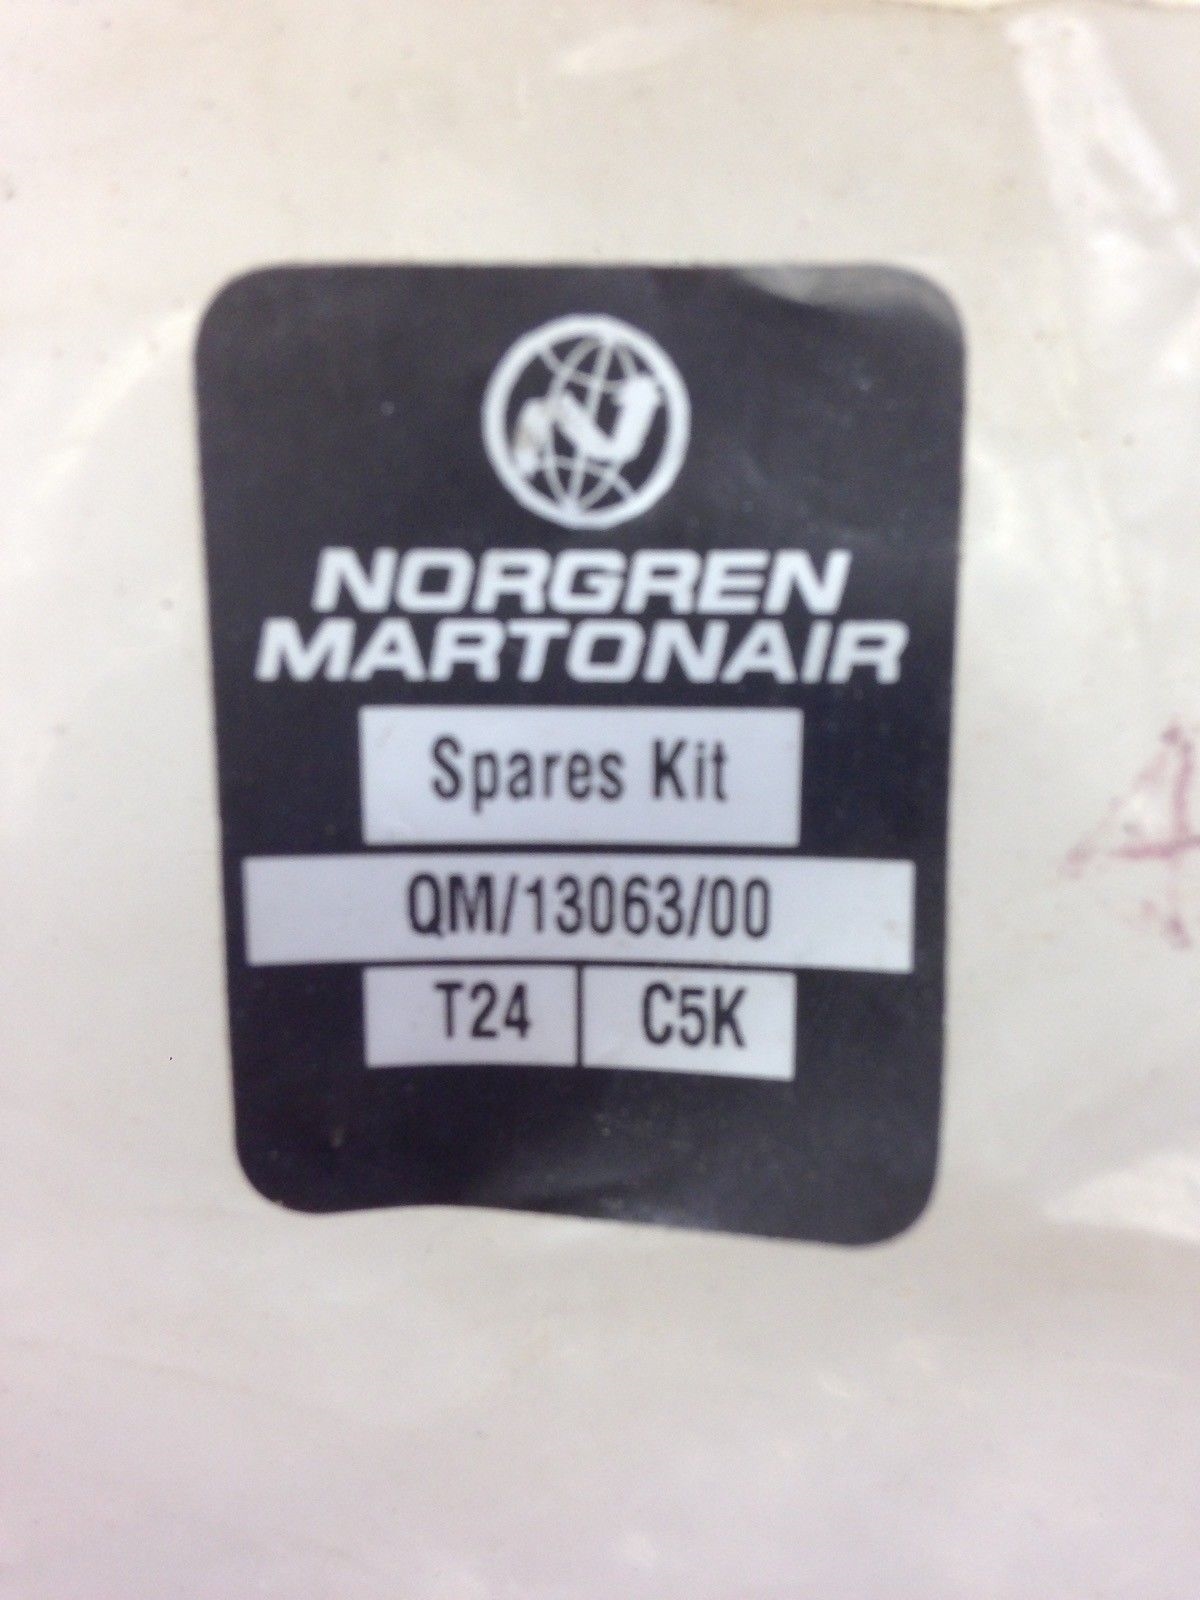 NORGREN MARTONAIR QM/13063/00 T24 C5K SPARES KIT (H36) 2